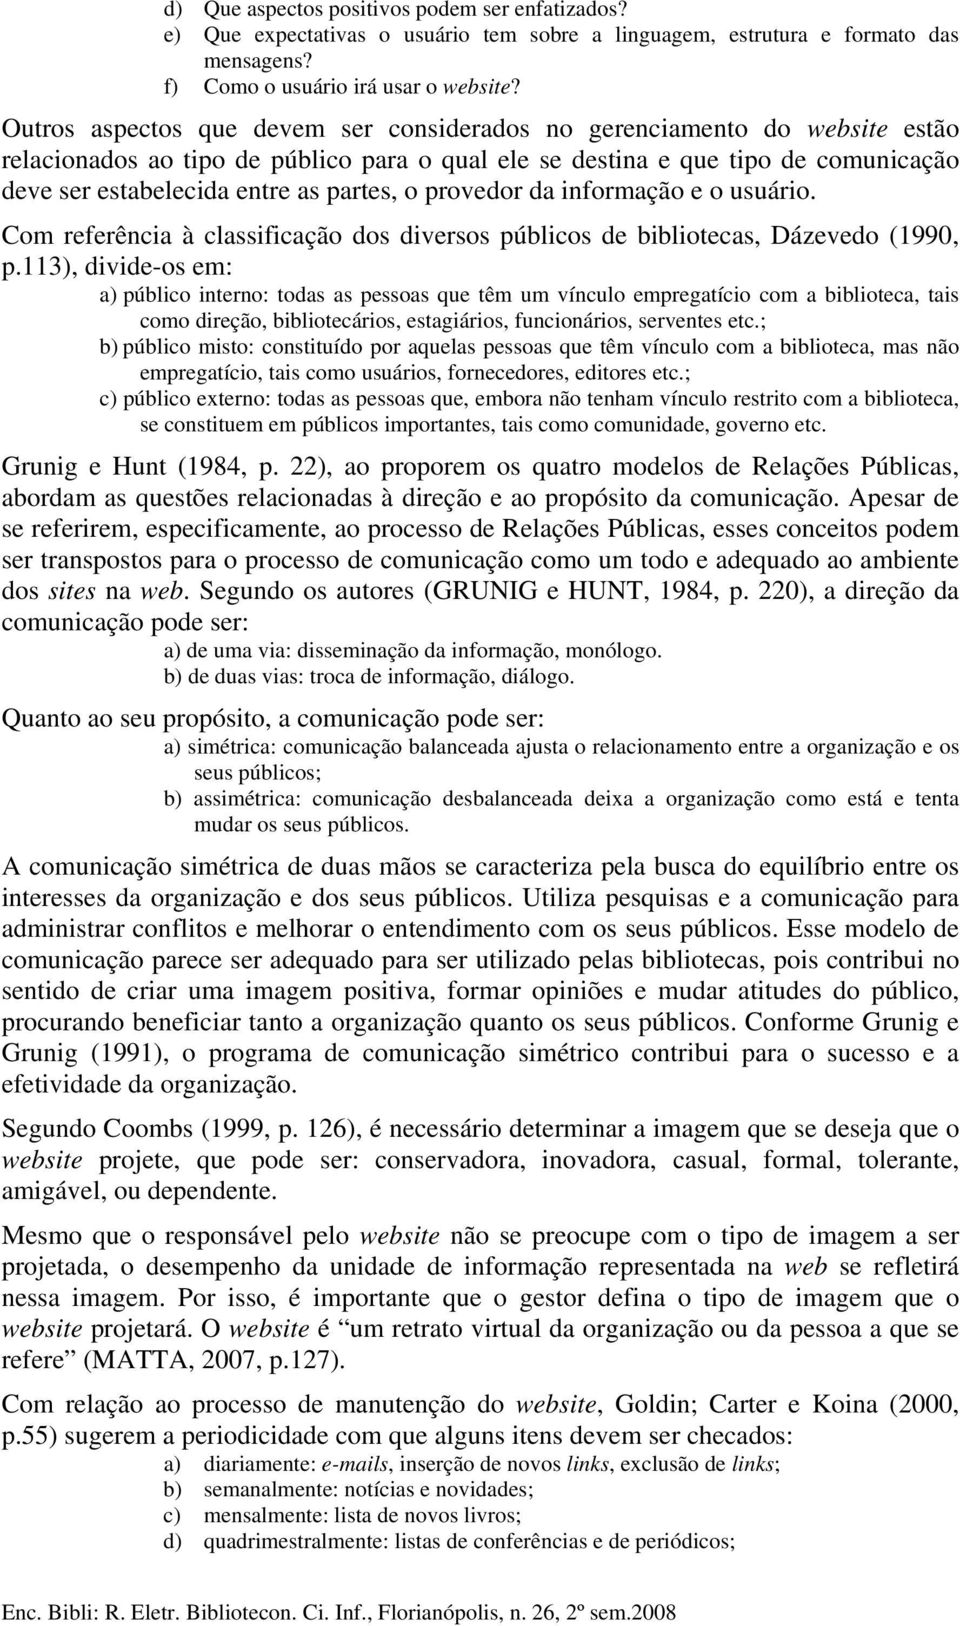 partes, o provedor da informação e o usuário. Com referência à classificação dos diversos públicos de bibliotecas, Dázevedo (1990, p.